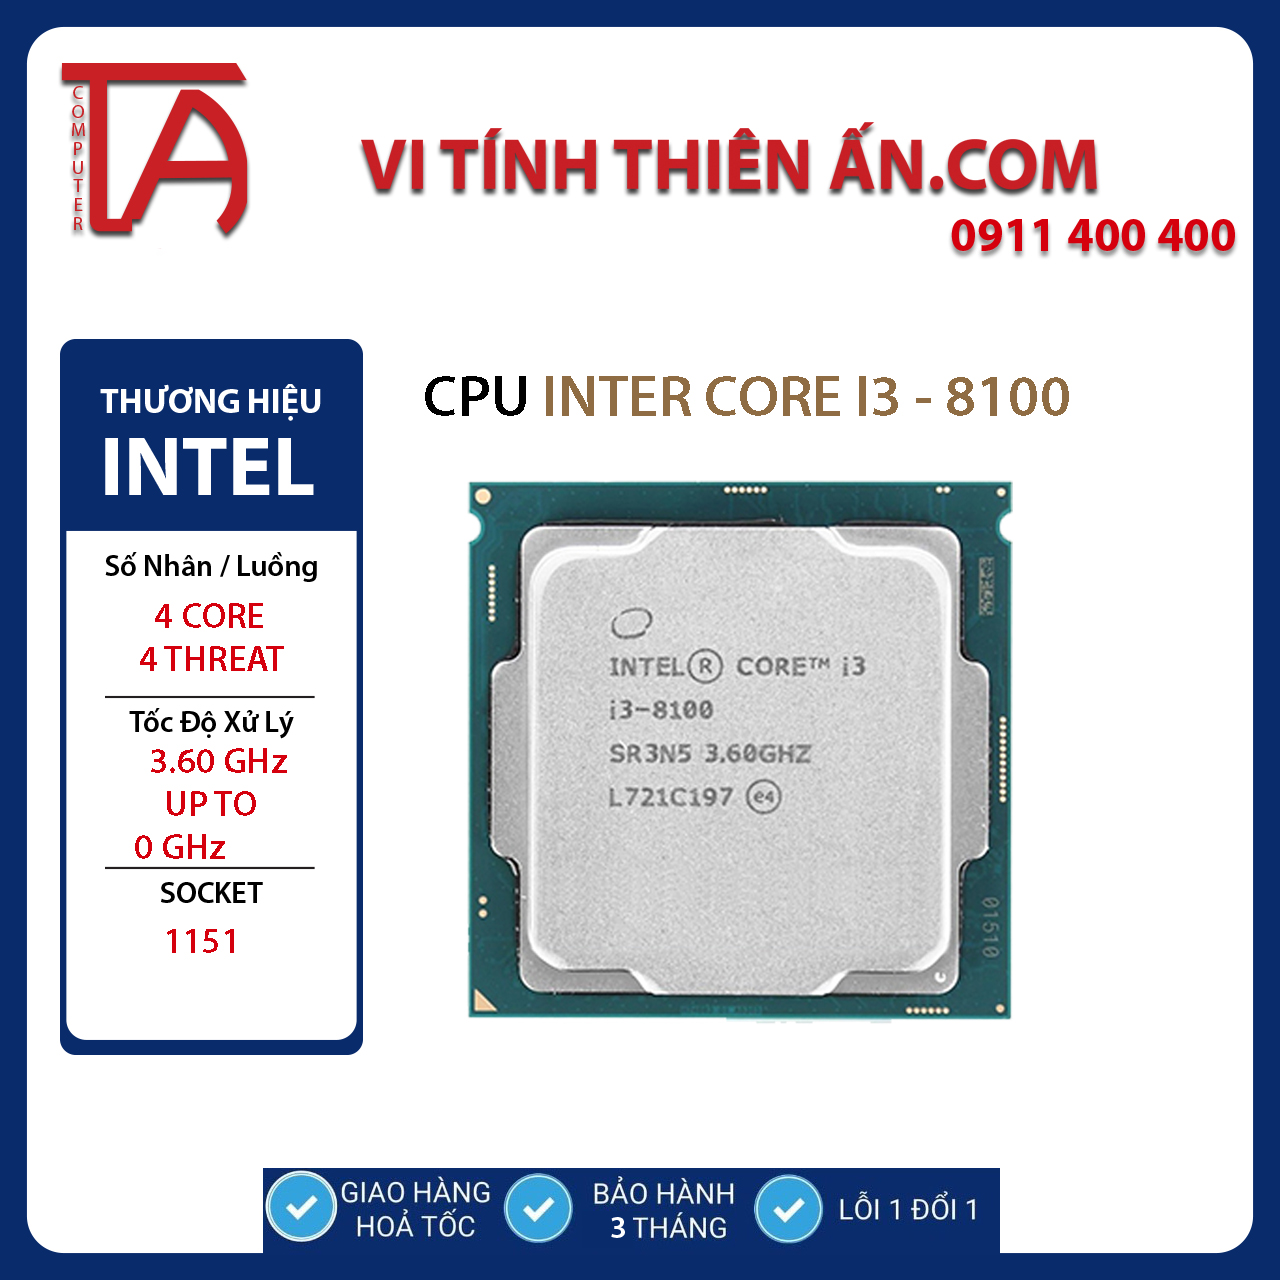 CPU Intel Core I5 8500 ( 3.0GHz / 9M  / 6 nhân 6 luồng )